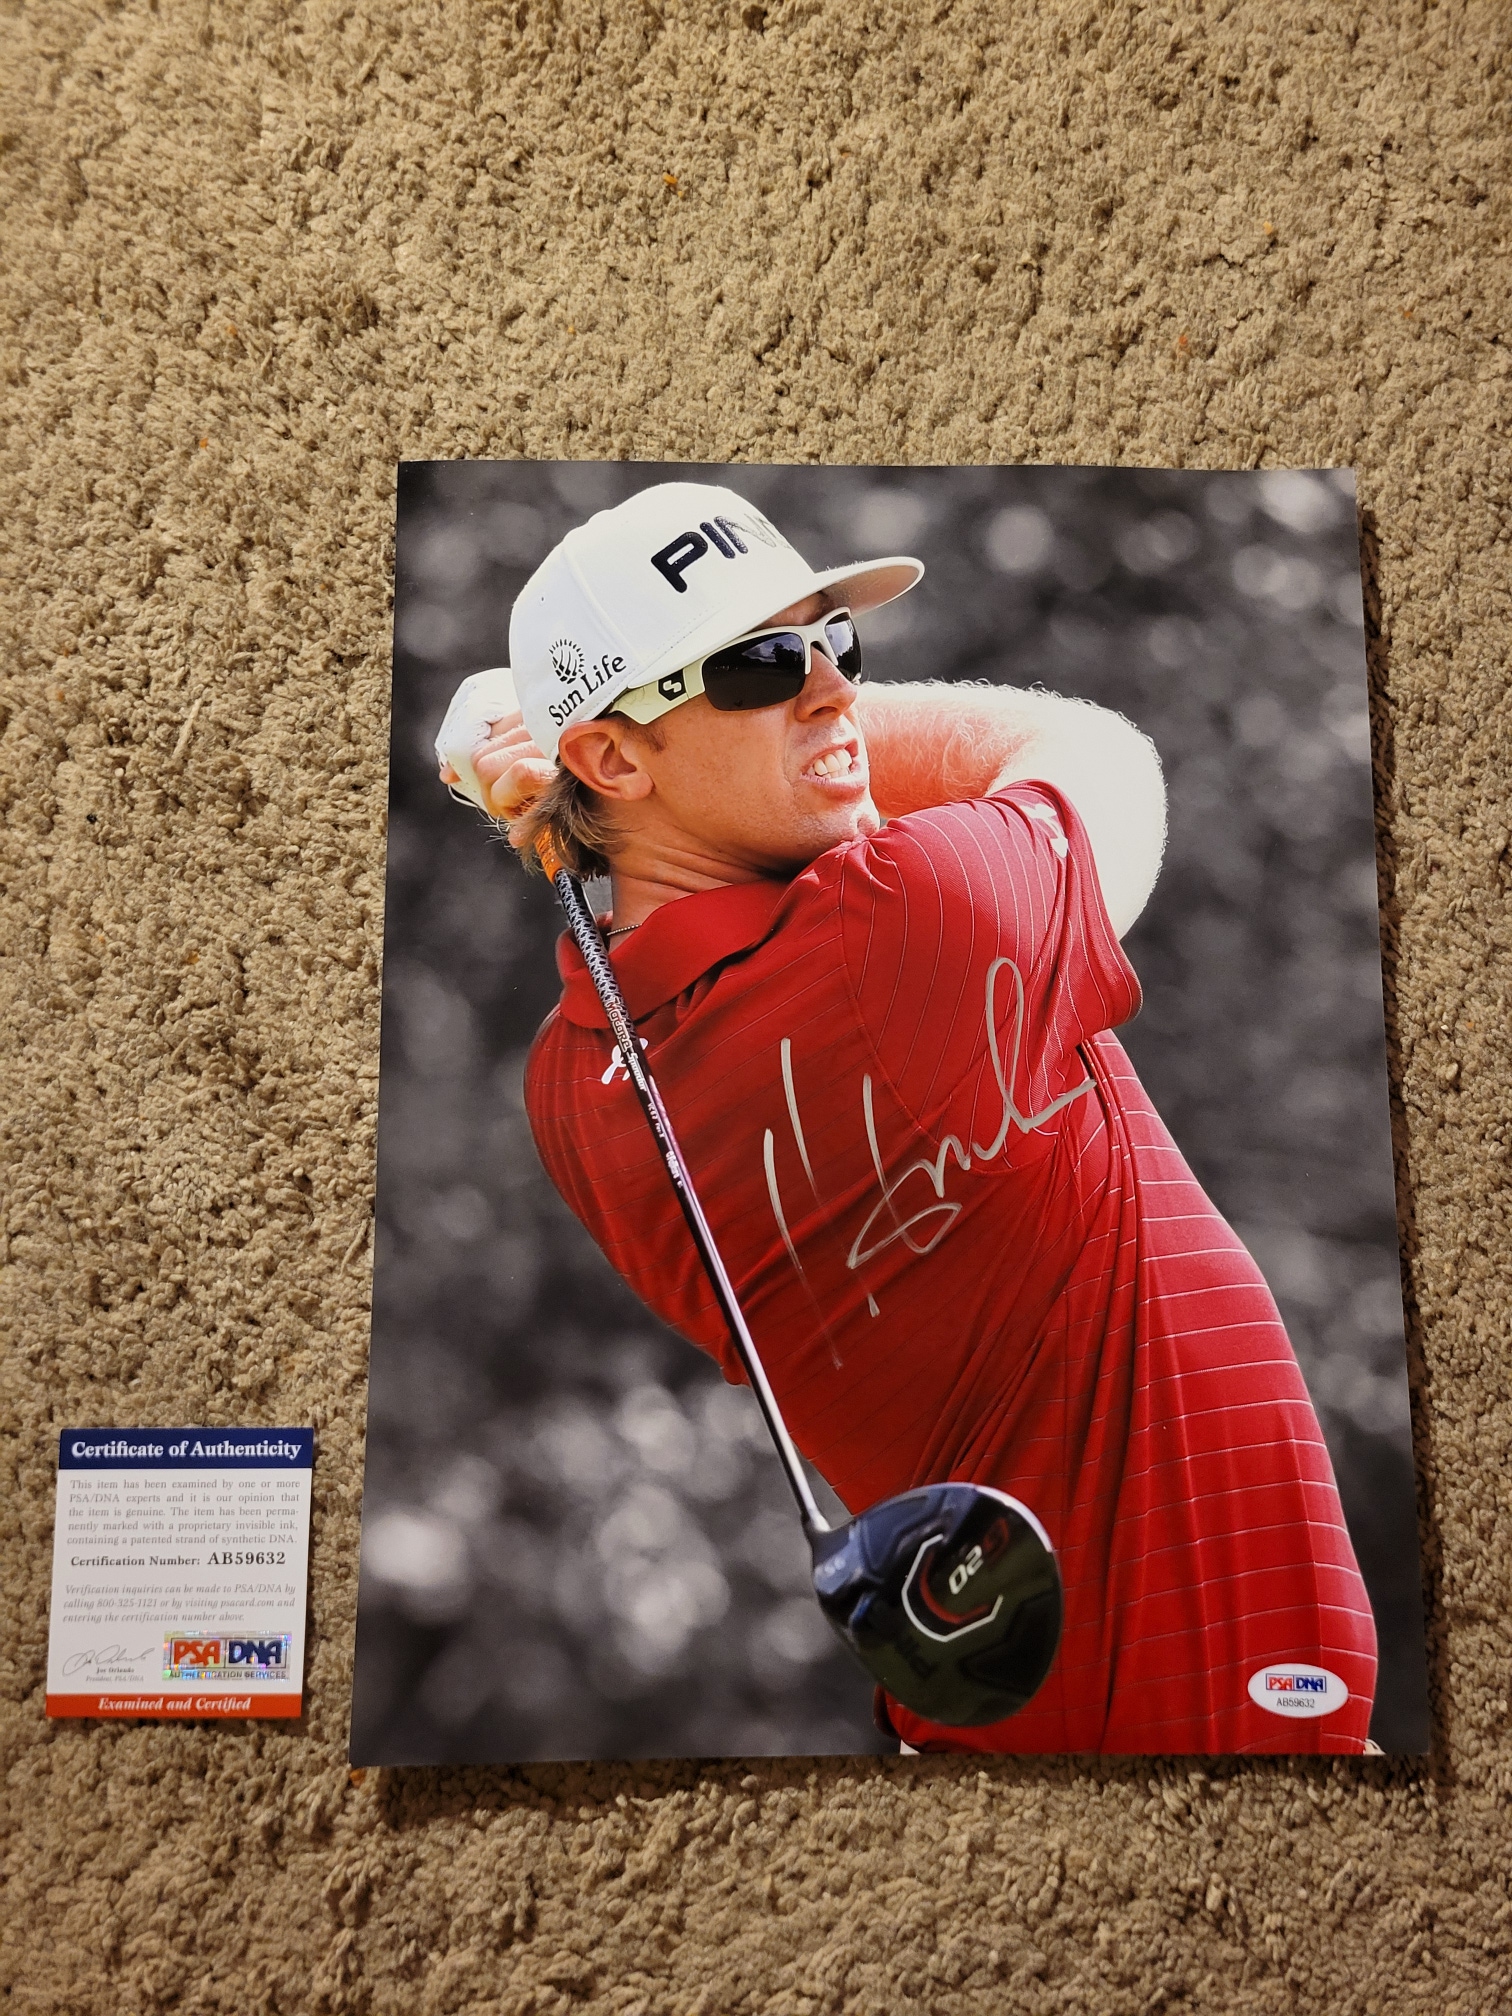 Hunter Mahan PGA Tour Autographed Photo